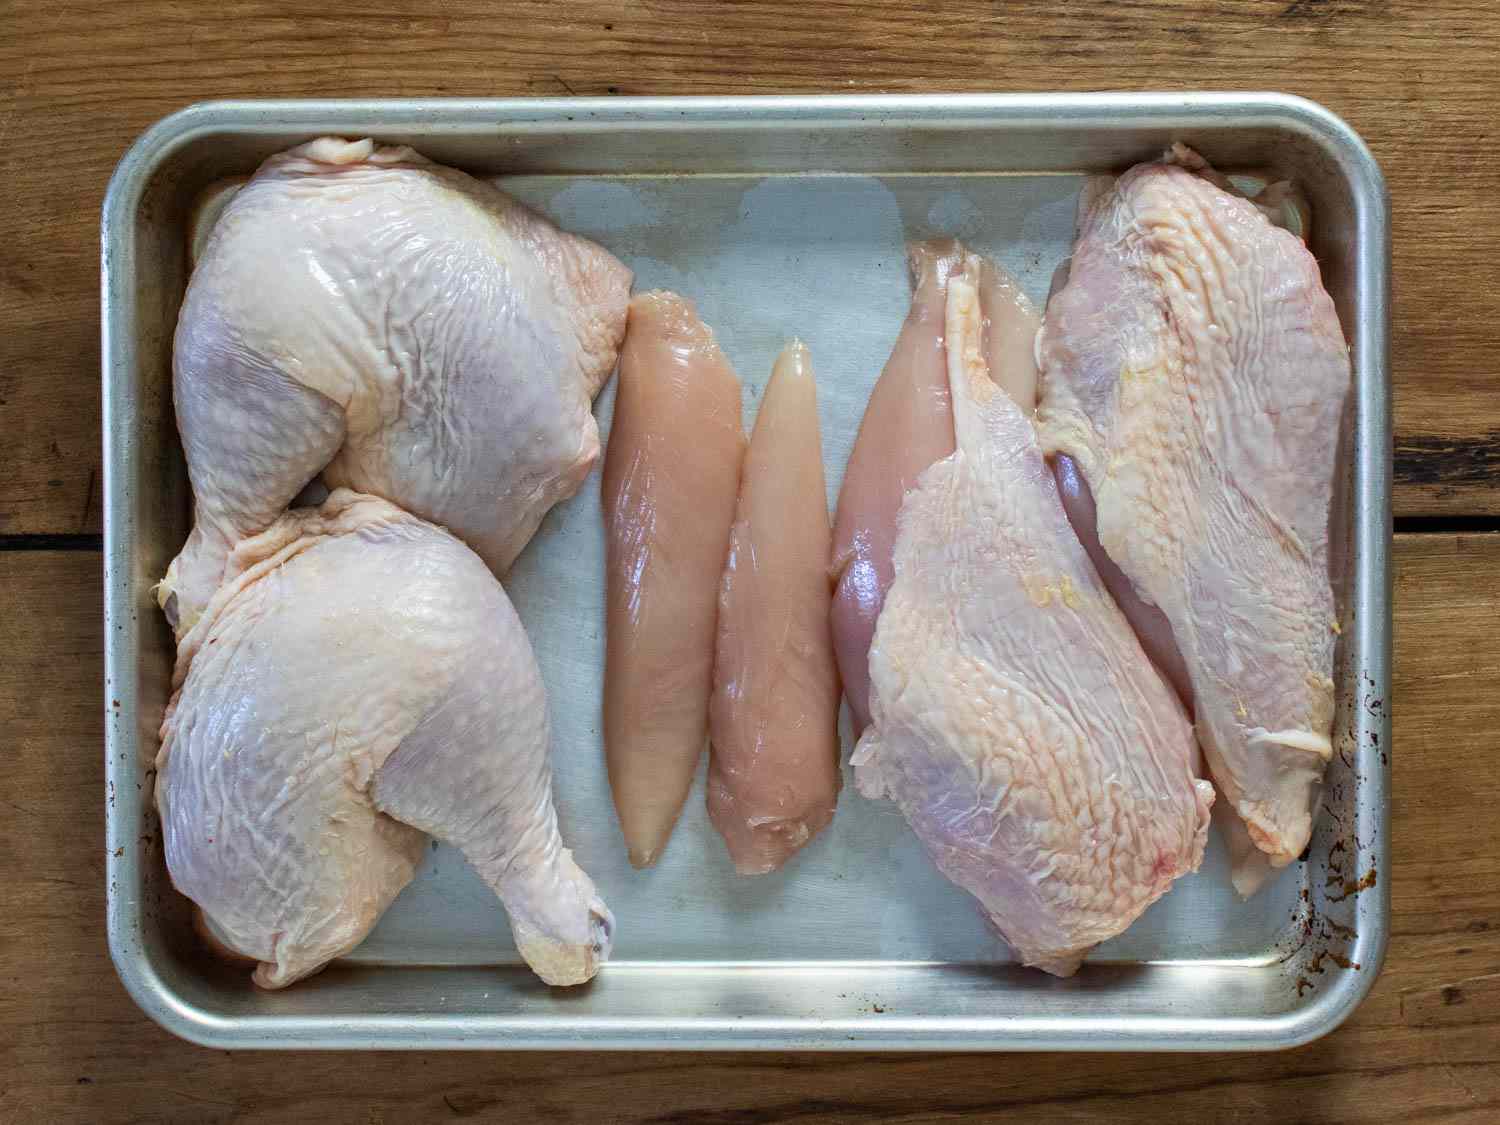 削减主要鸡边的烤盘:从左到右:腿,投标,乳房部分